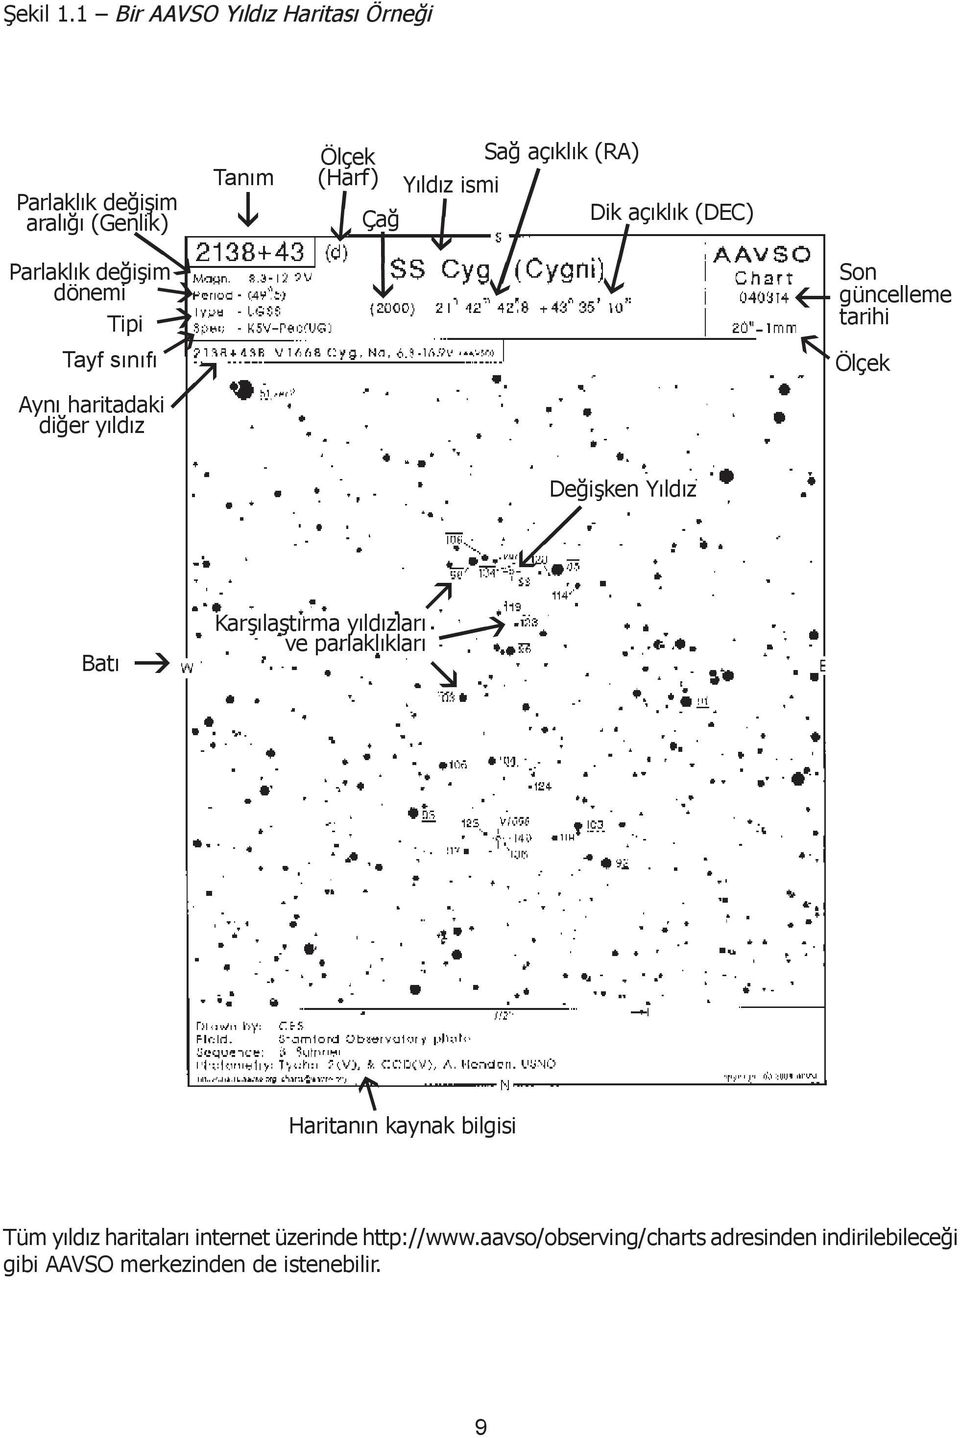 haritadaki diğer yıldız m g k k Tanım i Ölçek (Harf) Çağ Yıldız ismi i i Sağ açıklık (RA) i Dik açıklık (DEC) i f Son